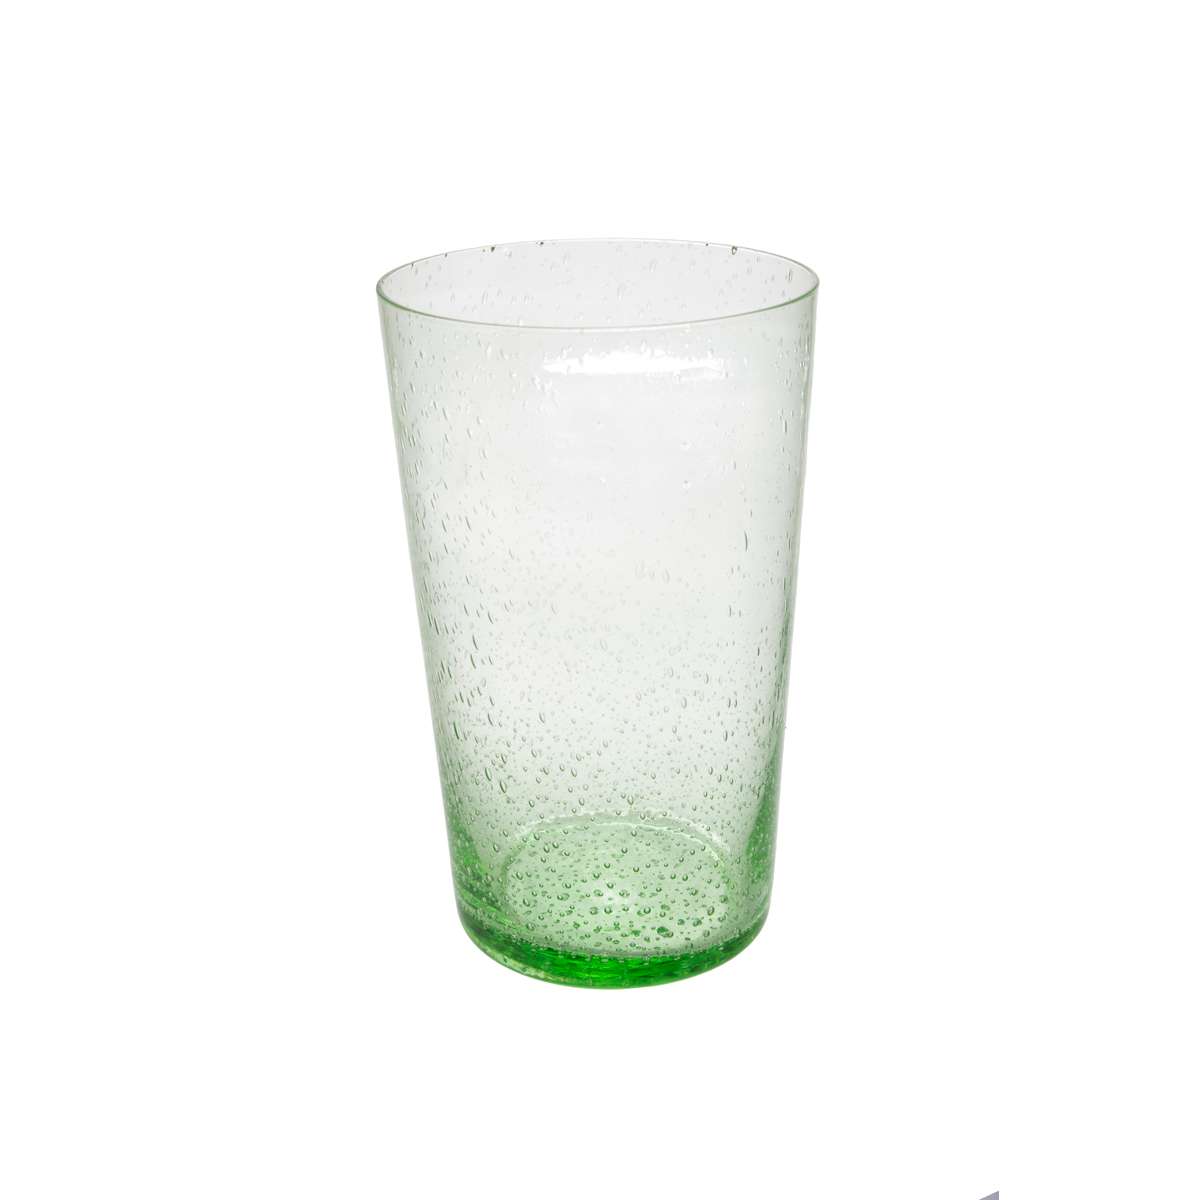 Ποτήρι Νερού Γυάλινο Φυσητό Πράσινο Art Et Lumiere 480ml 02844 (Σετ 6 Τεμάχια) (Υλικό: Γυαλί, Χρώμα: Πράσινο , Μέγεθος: Σωλήνας) - Art Et Lumiere - lumiere_02844